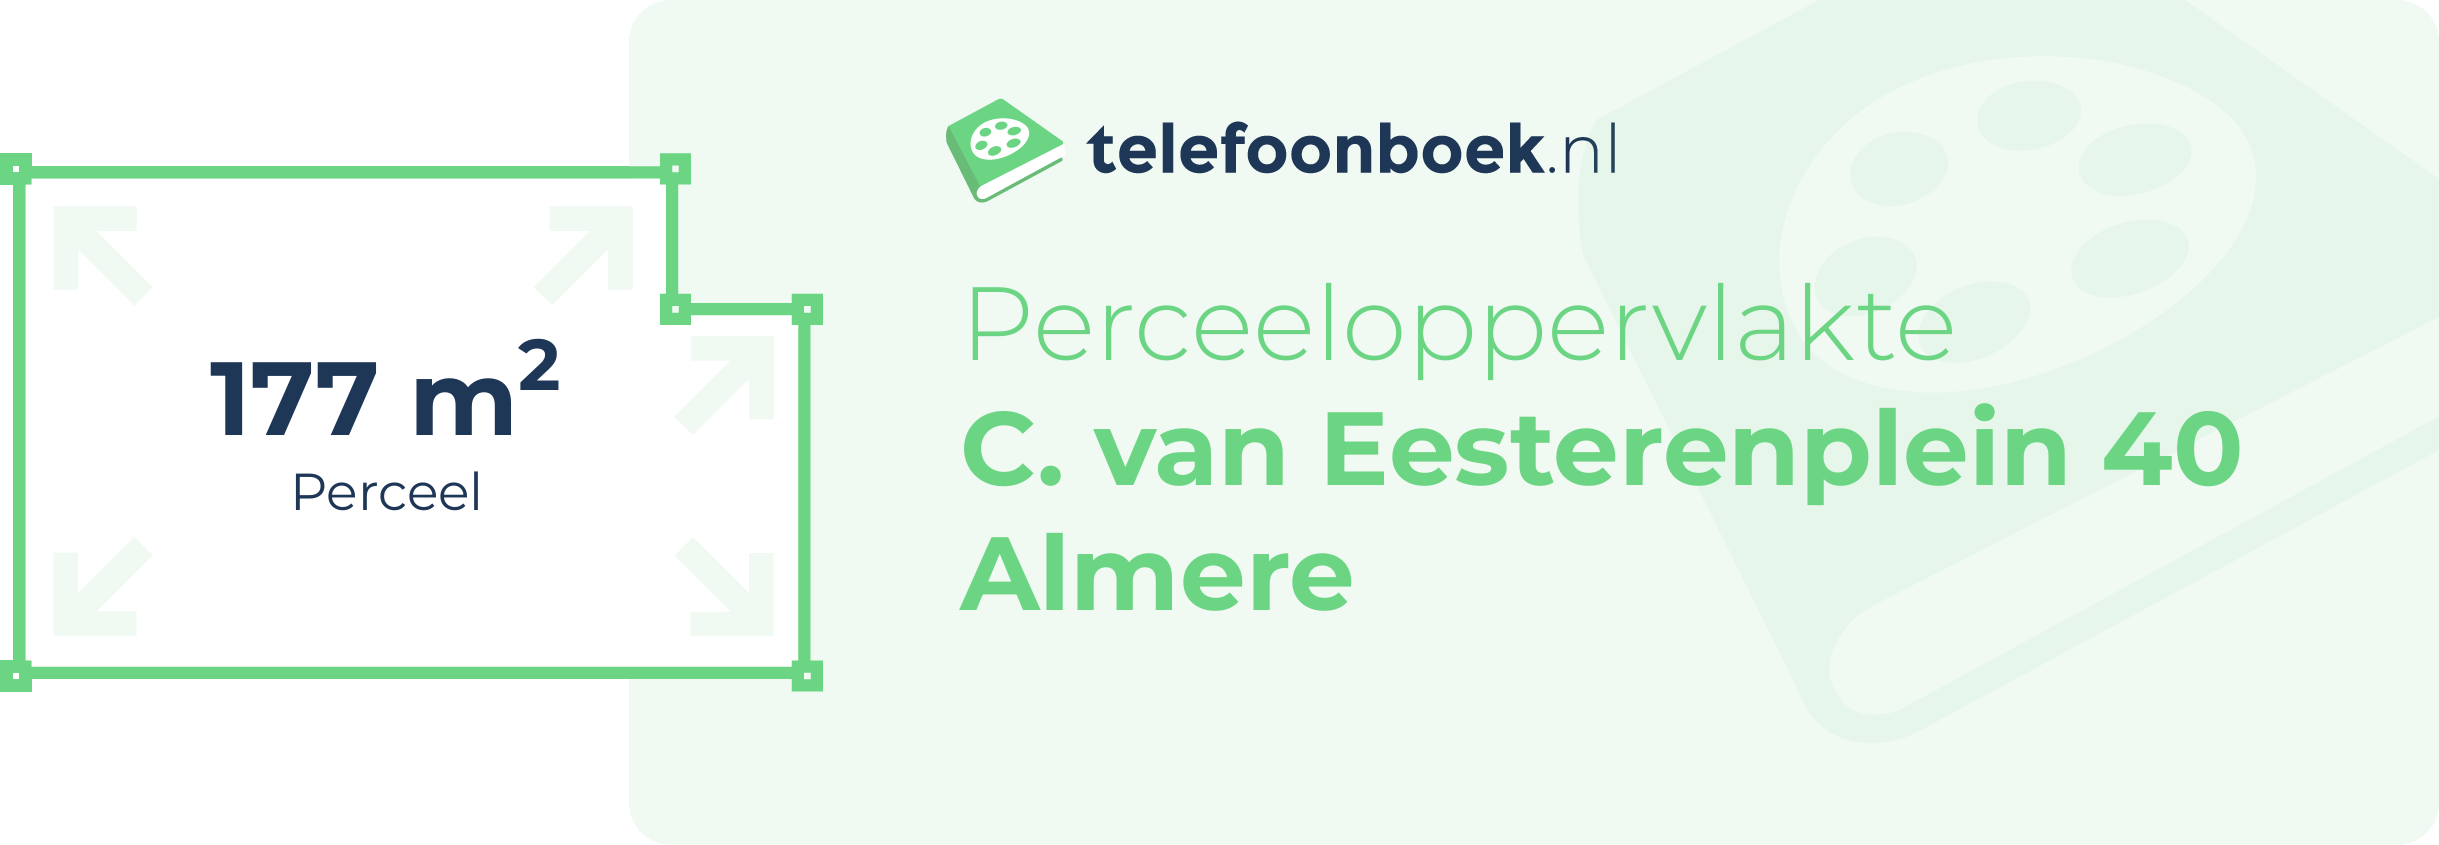 Perceeloppervlakte C. Van Eesterenplein 40 Almere